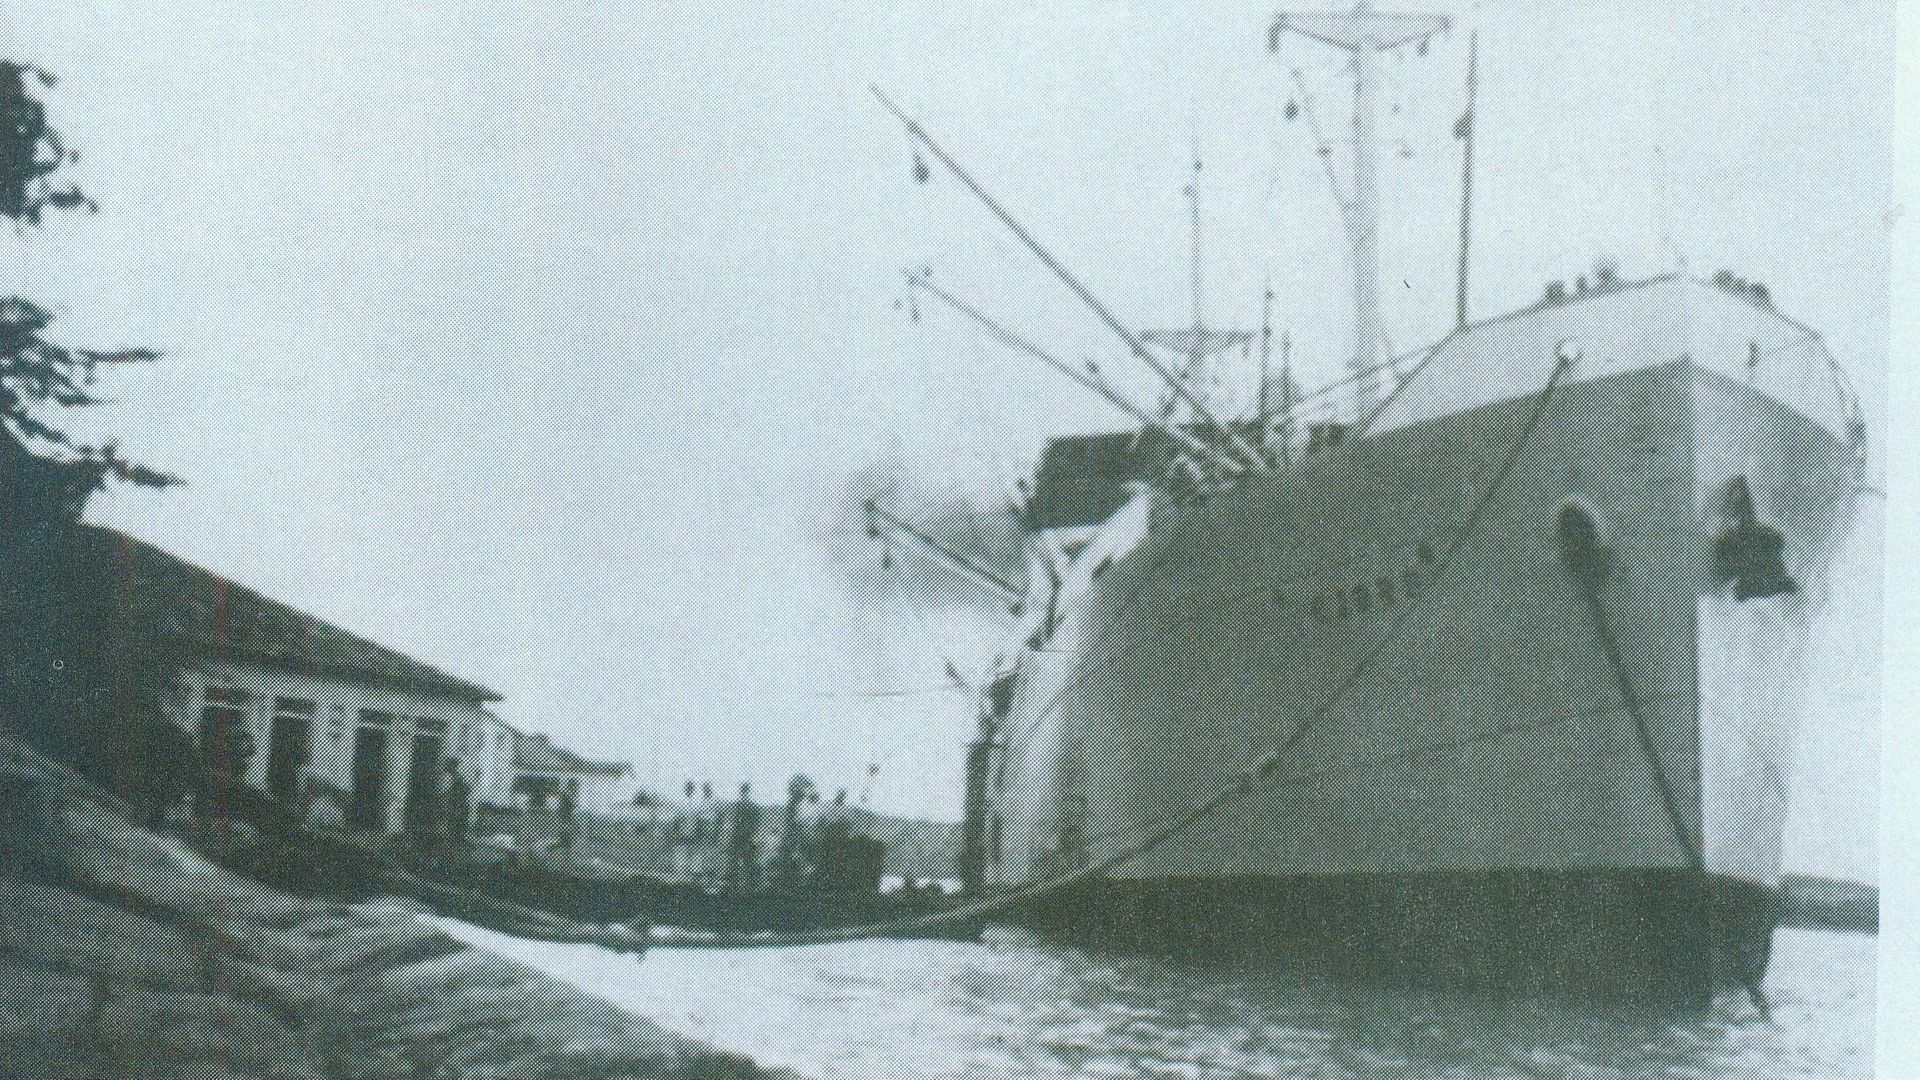 O navio Fjord foi um dos mais ativos no transporte de monazita em Guarapari